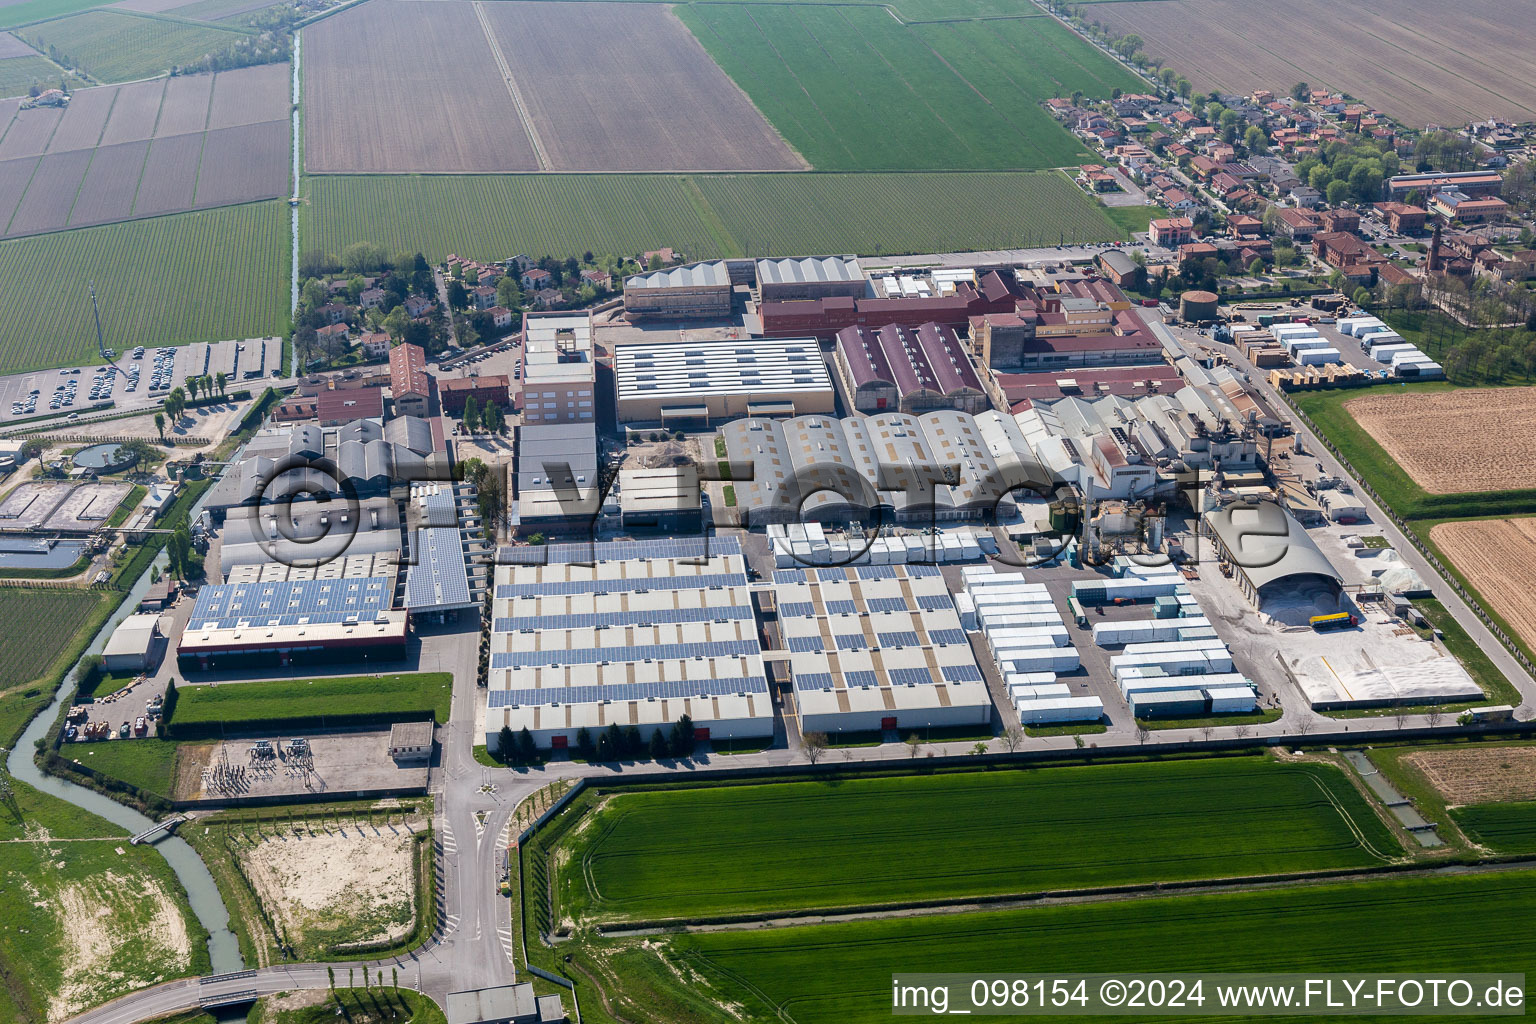 Gebäude und Produktionshallen auf dem Werksgelände der Glasfabrik Zignago Vetro in Fossalta di Portogruaro in Venetien, Italien